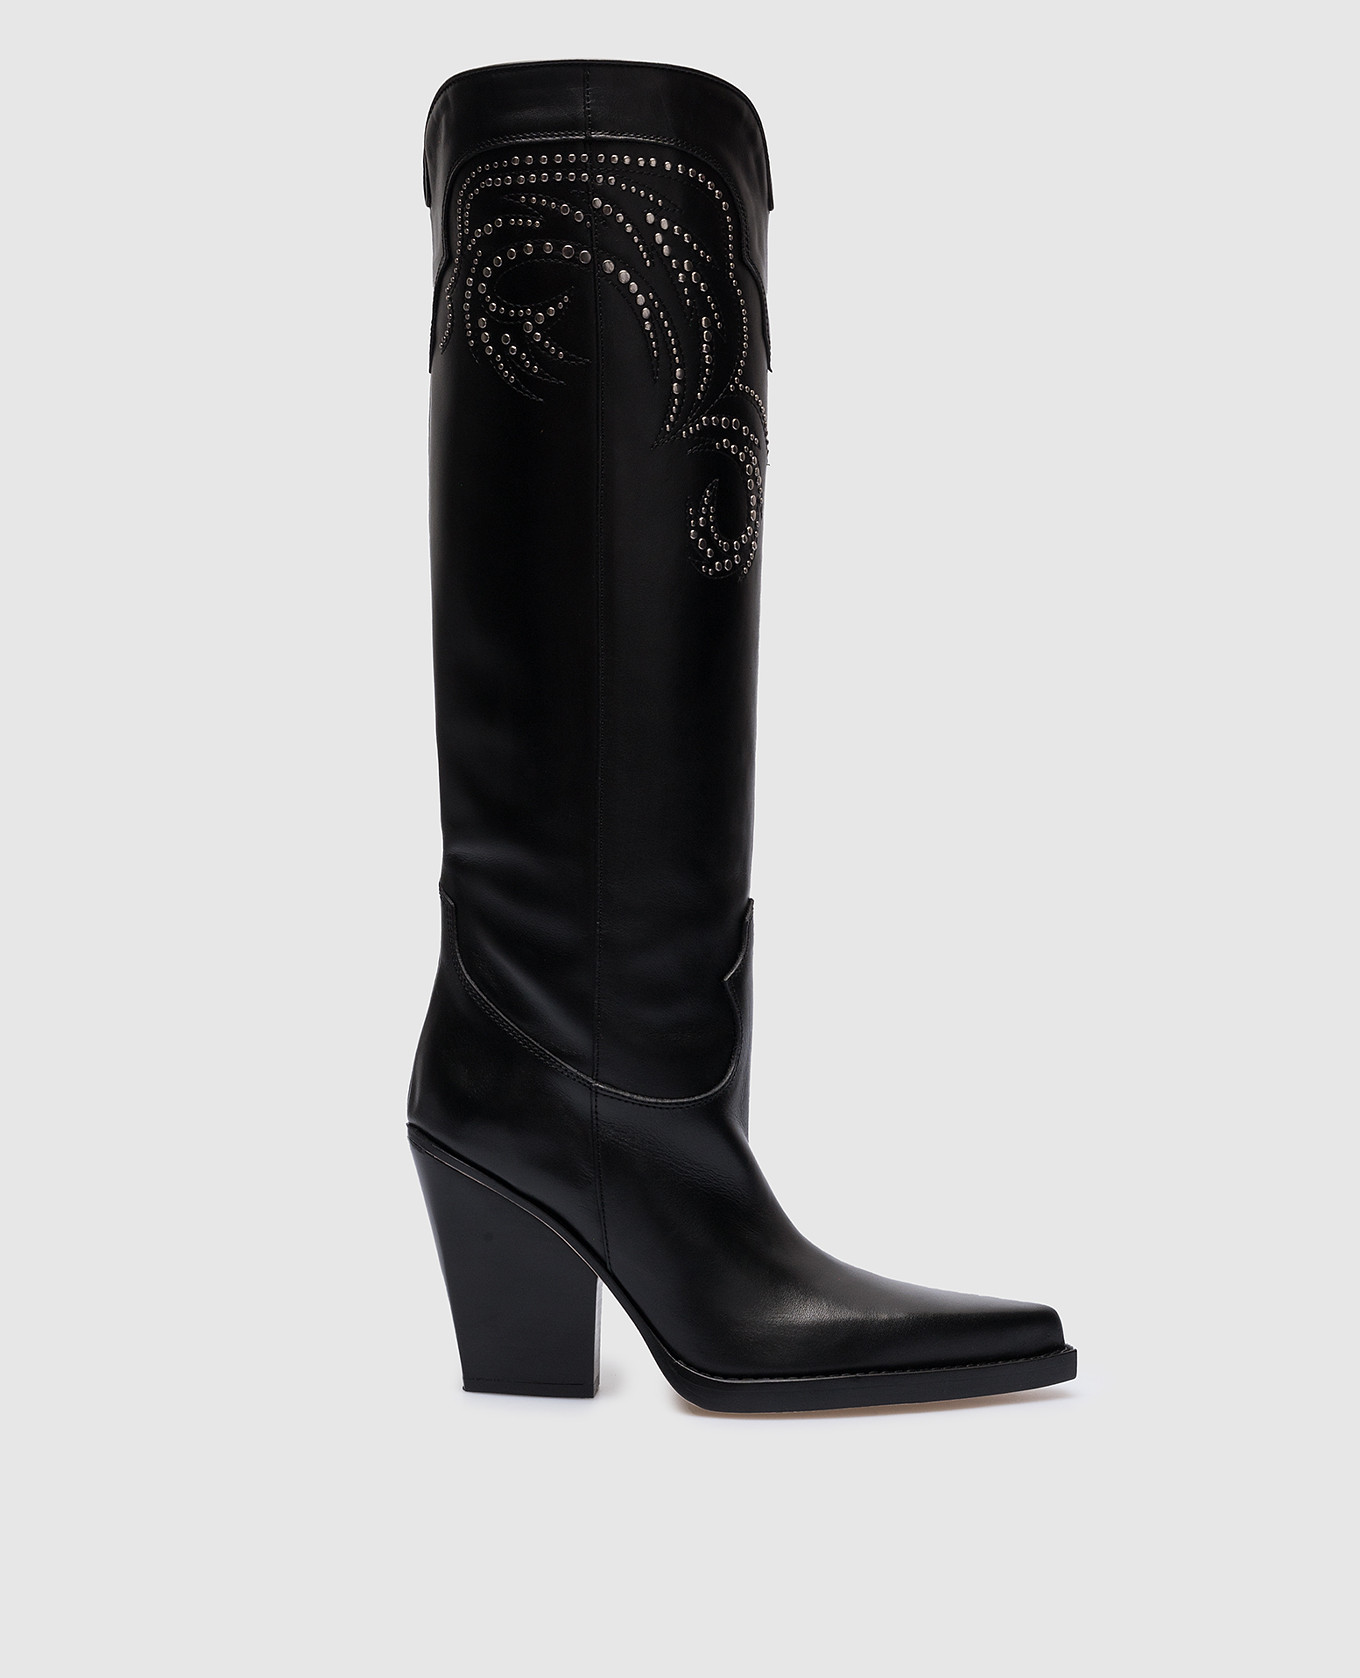 El Dorado black leather boots